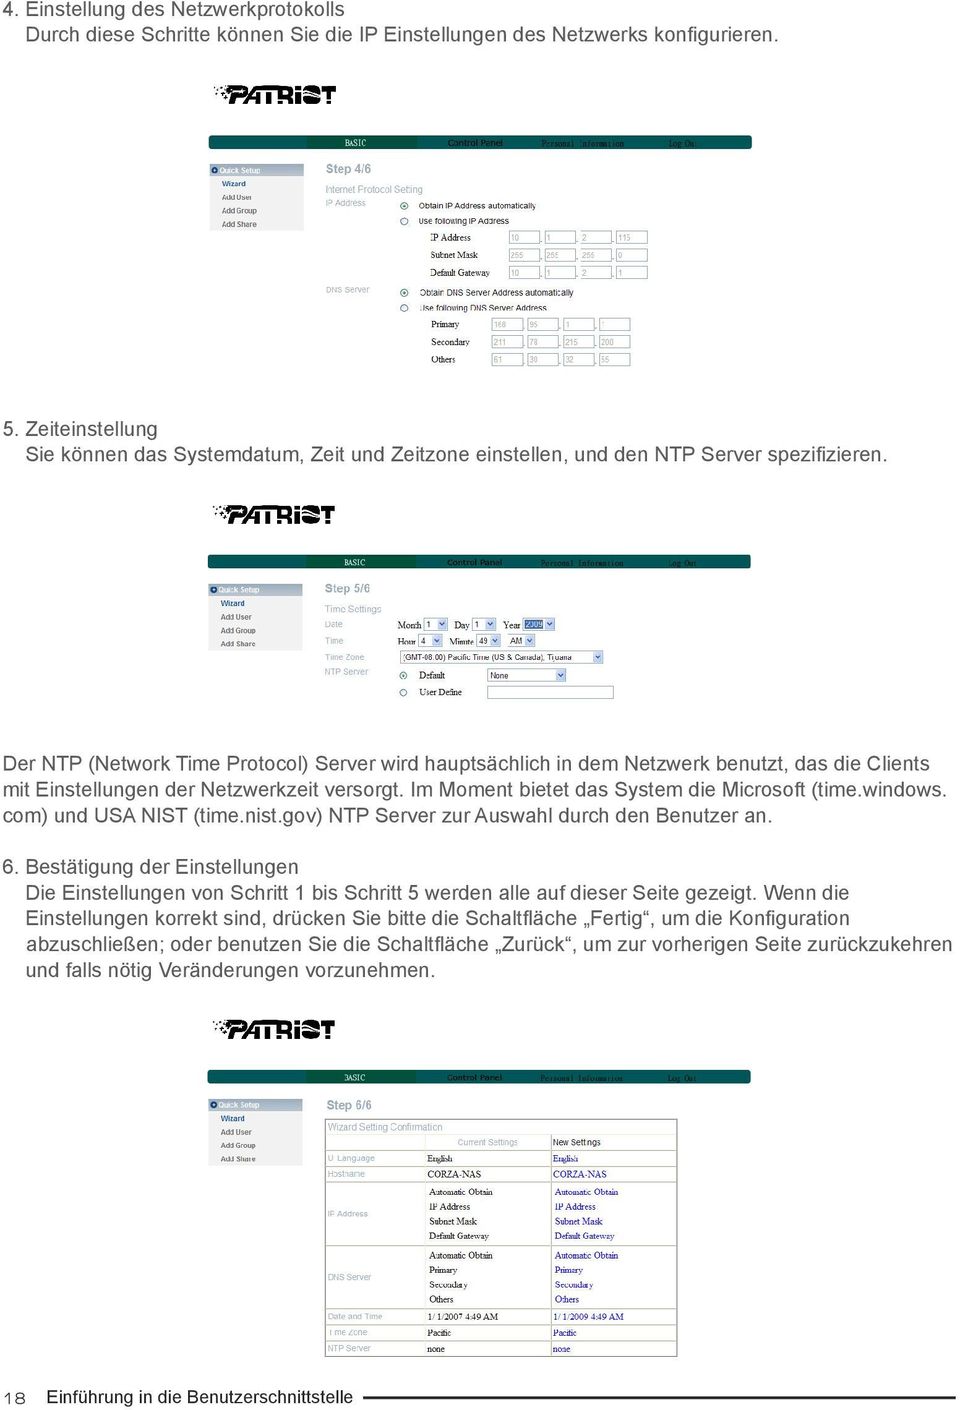 Der NTP (Network Time Protocol) Server wird hauptsächlich in dem Netzwerk benutzt, das die Clients mit Einstellungen der Netzwerkzeit versorgt. Im Moment bietet das System die Microsoft (time.windows.